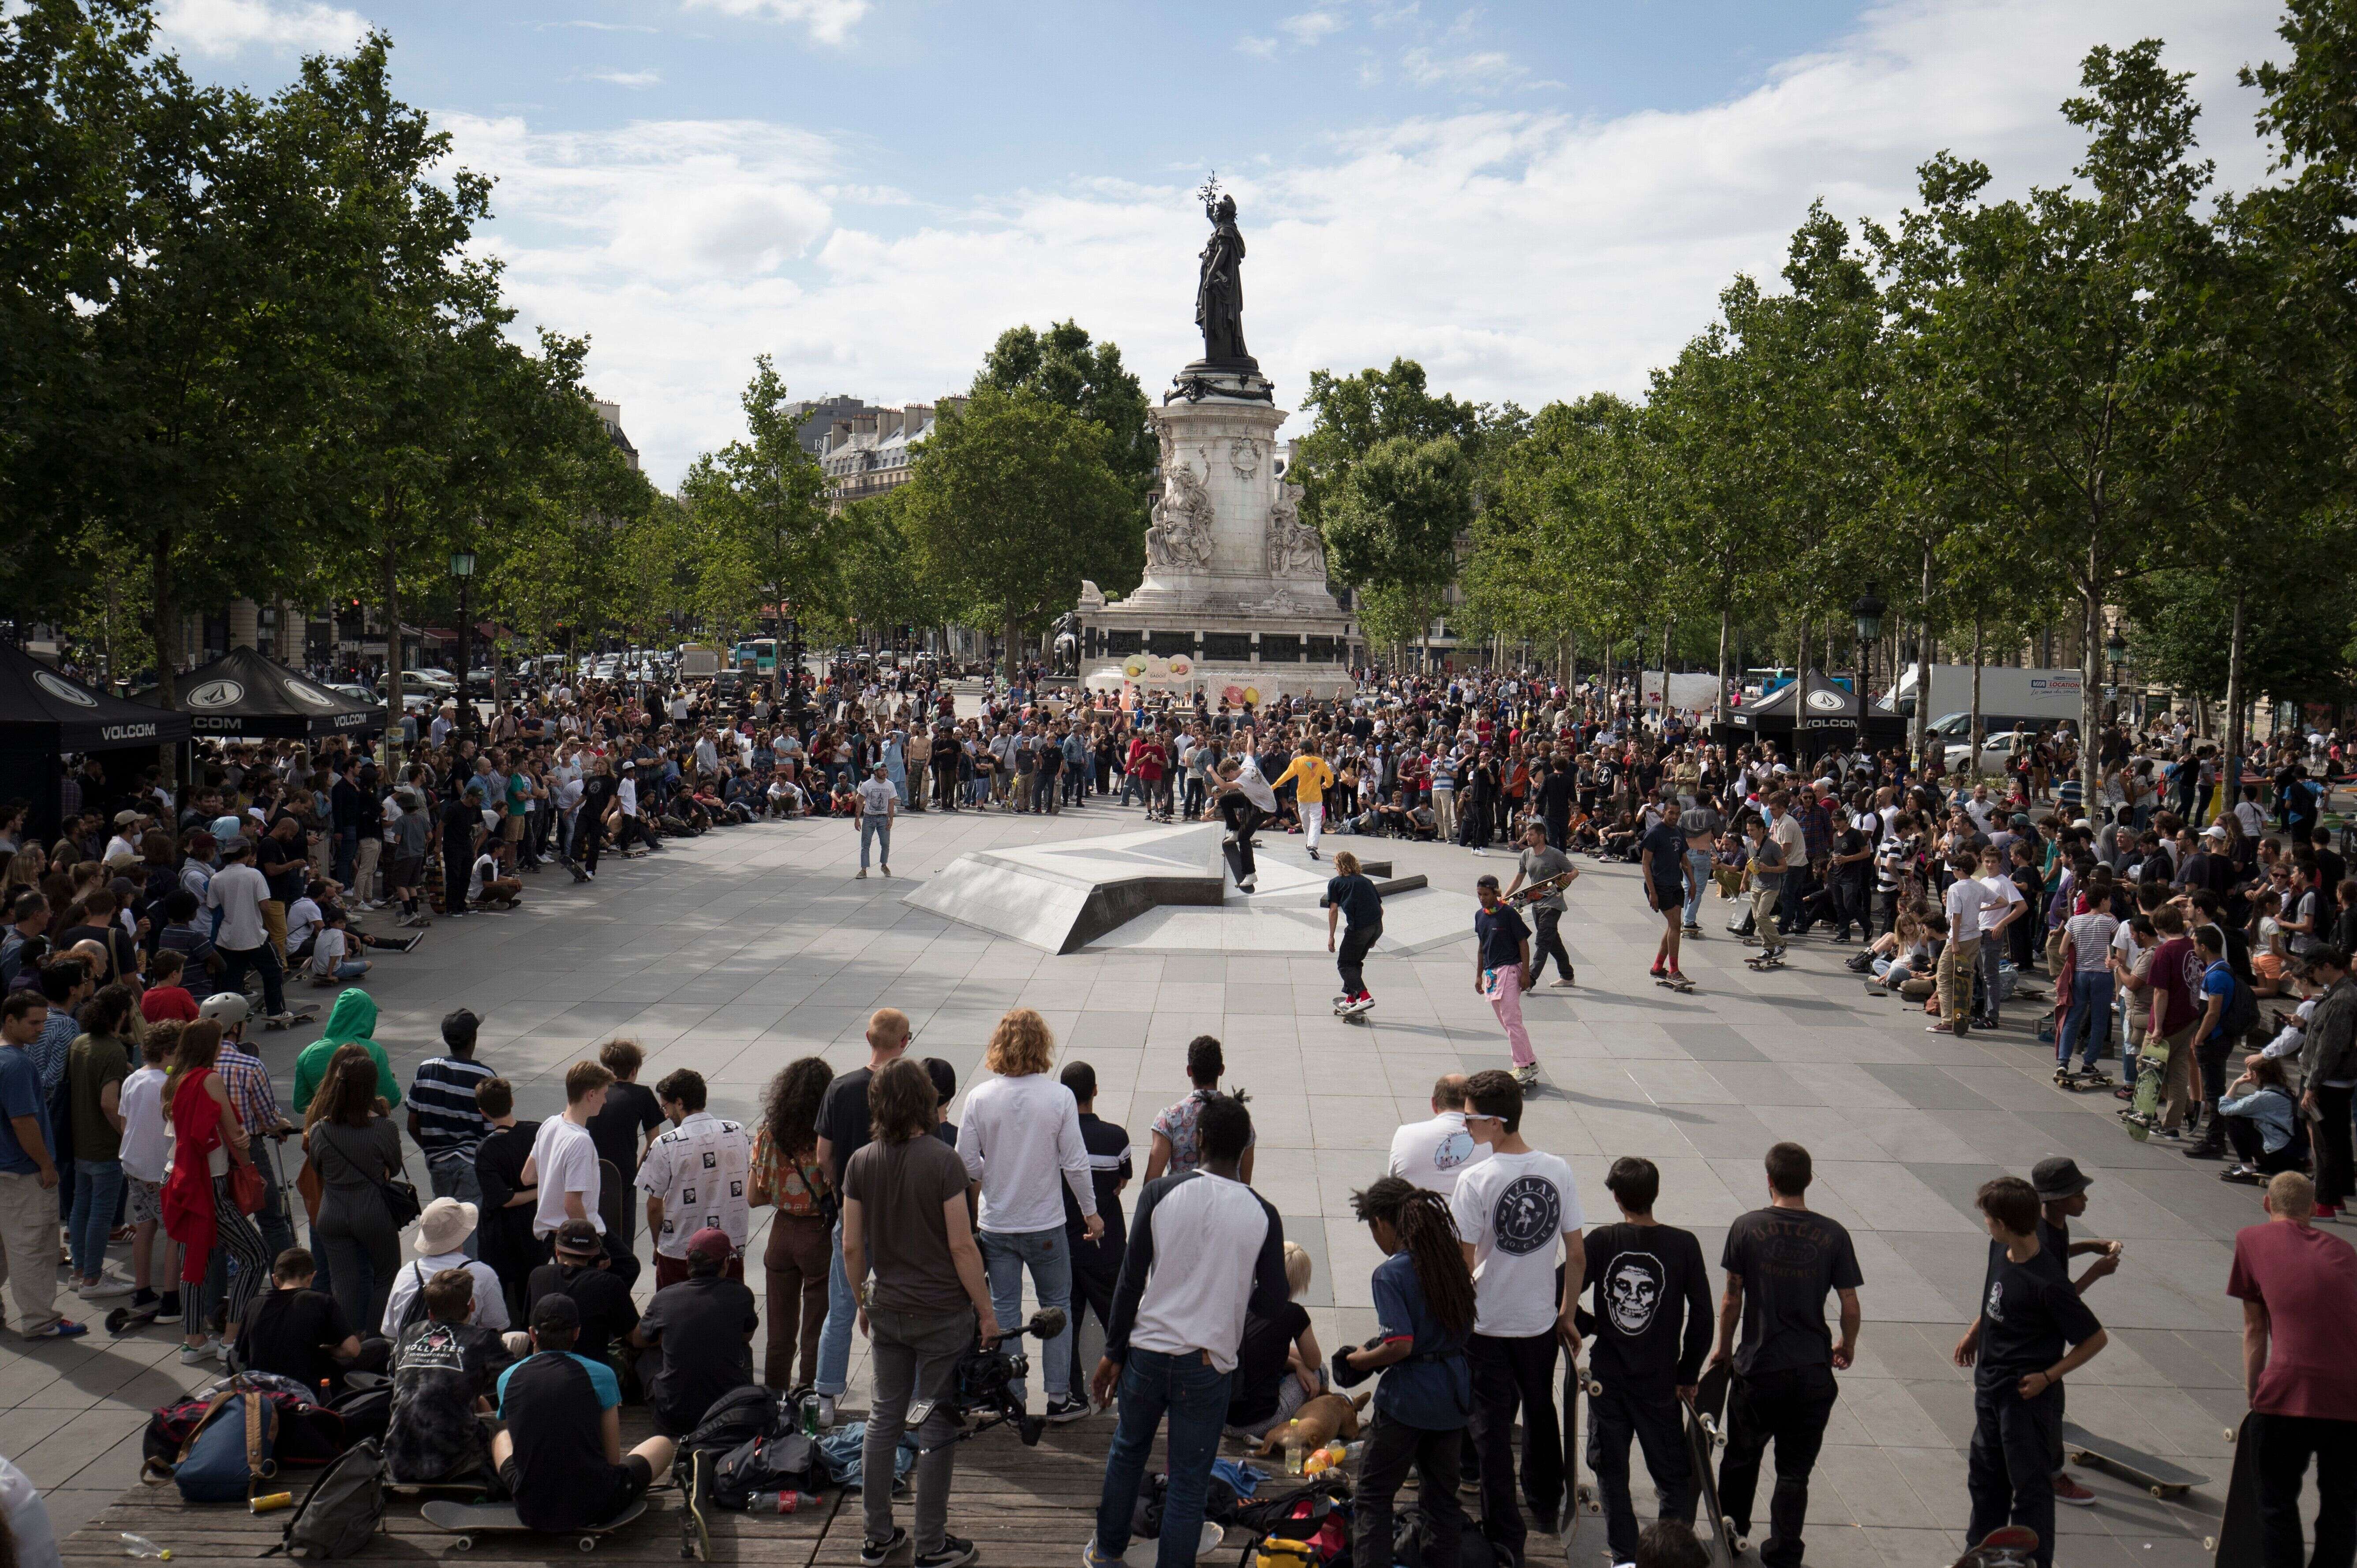 La place de la République à Paris vue lors d'un concours de skate, le 16 juin 2018.